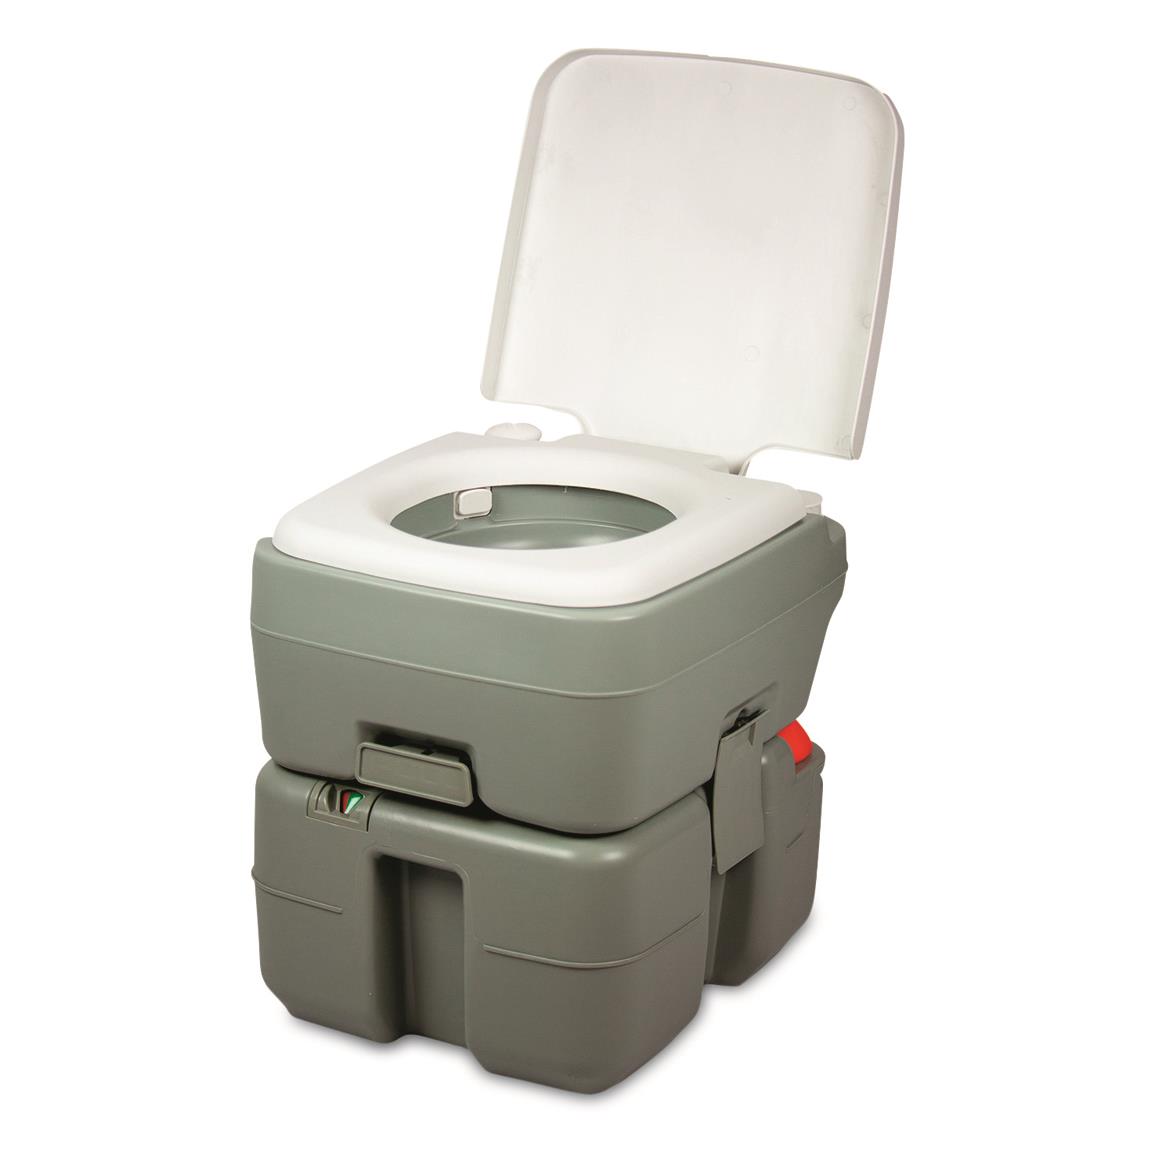 Reliance Flush-N-Go 3320 Portable Toilet